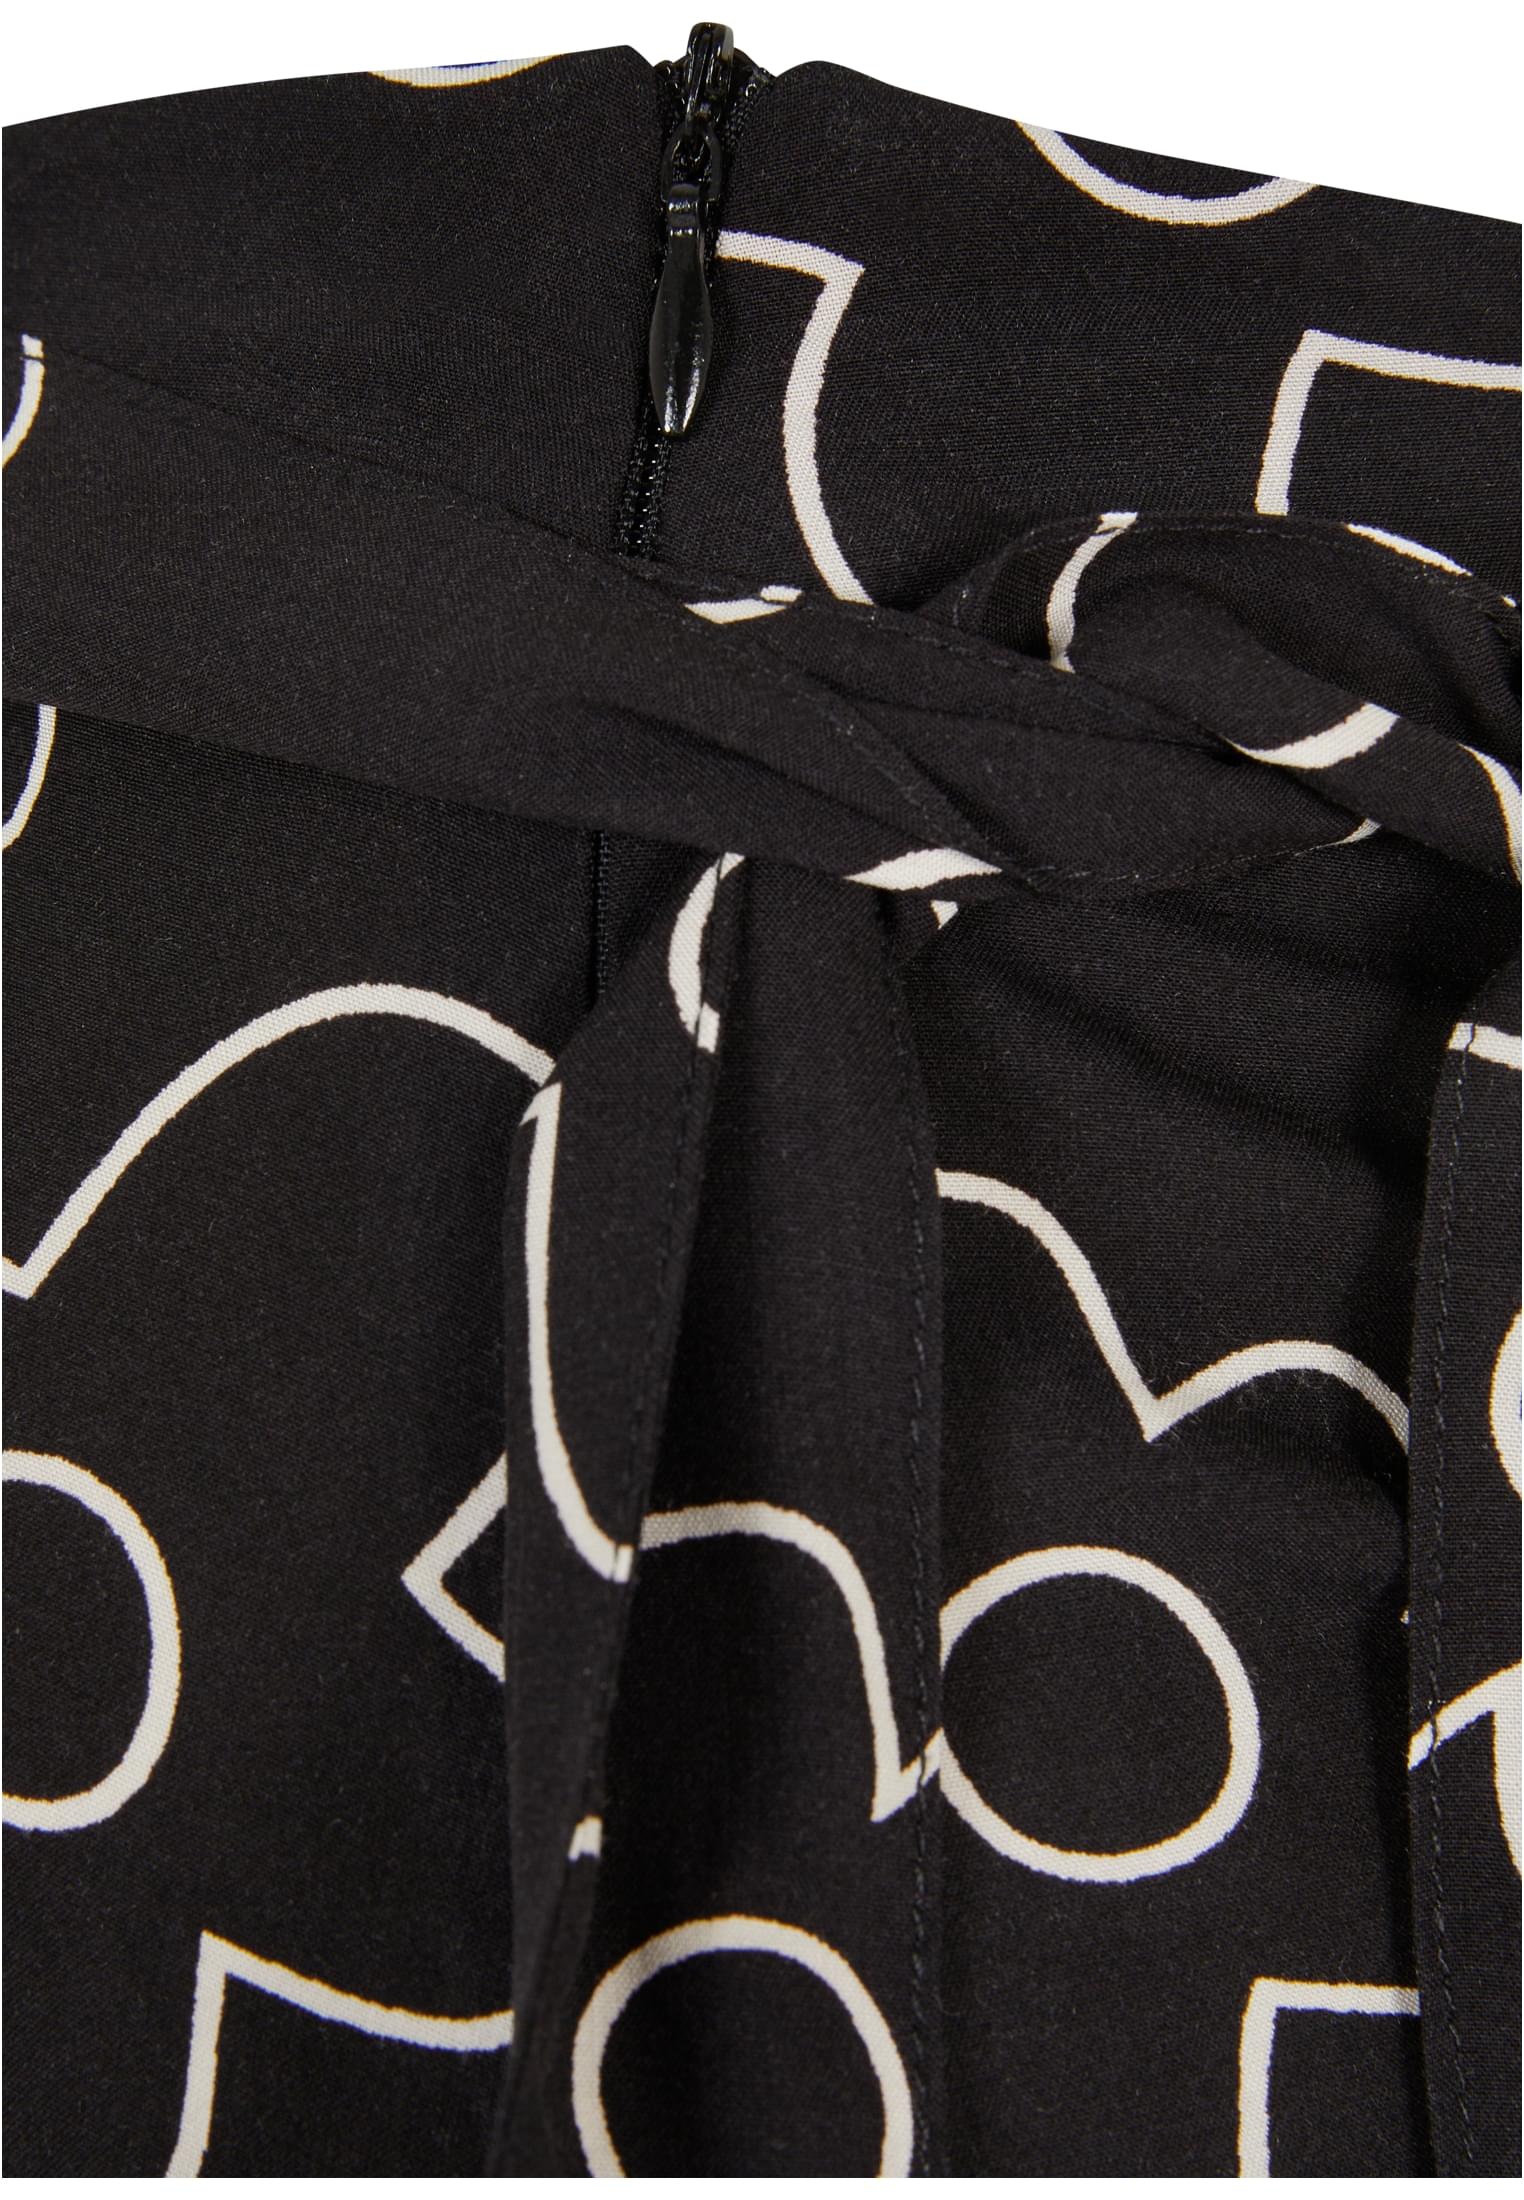 URBAN CLASSICS Jerseyrock »Damen Ladies Viscose Mini Skirt«, (1 tlg.)  kaufen | BAUR